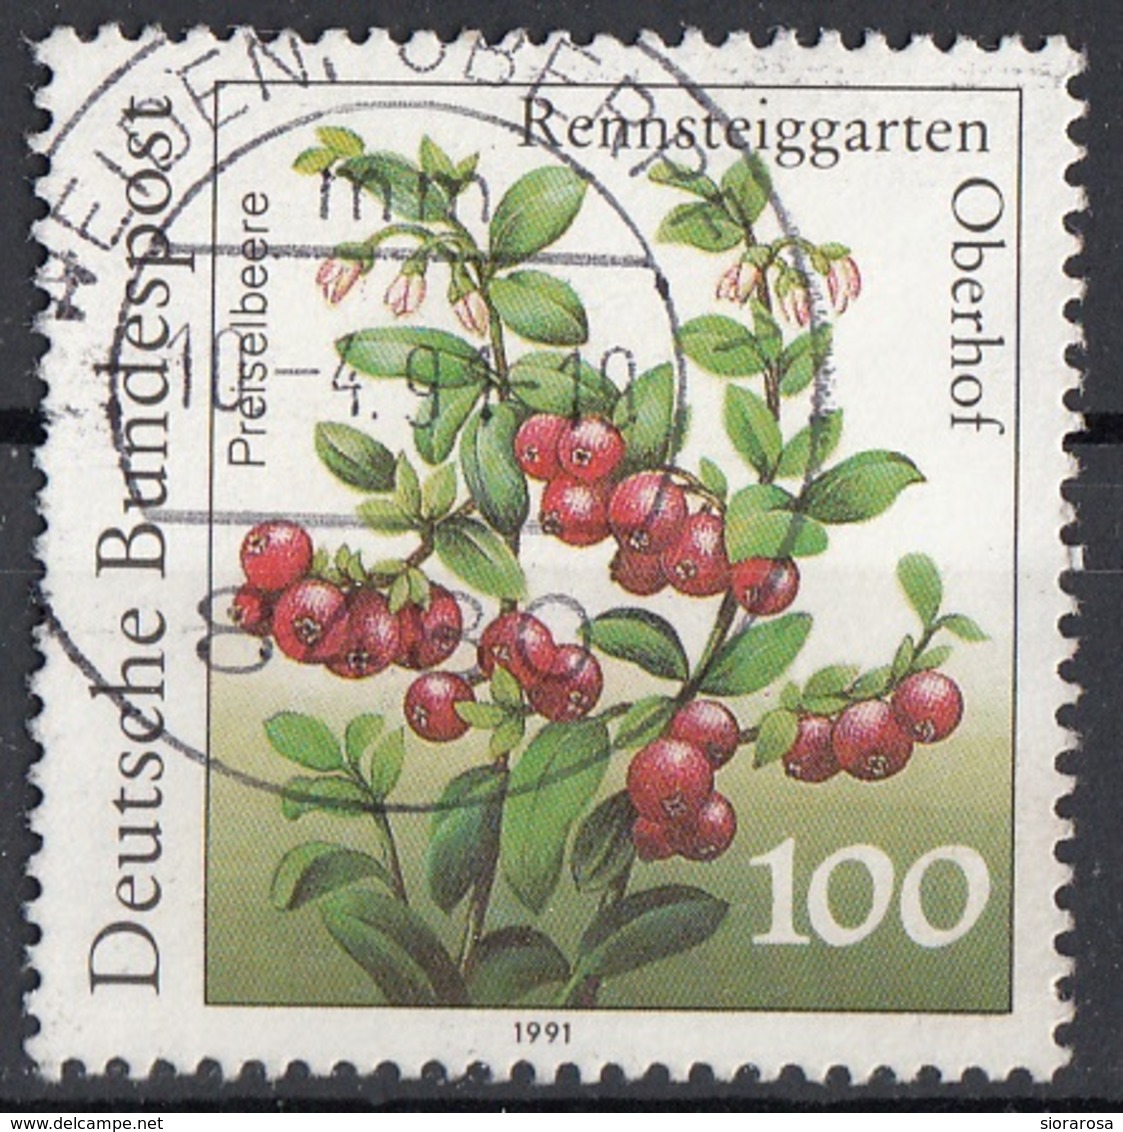 Germania 1991 Sc. 1633 Frutta Mirtillo Cranberry Bundespost Viaggiato Used Germany - Frutta